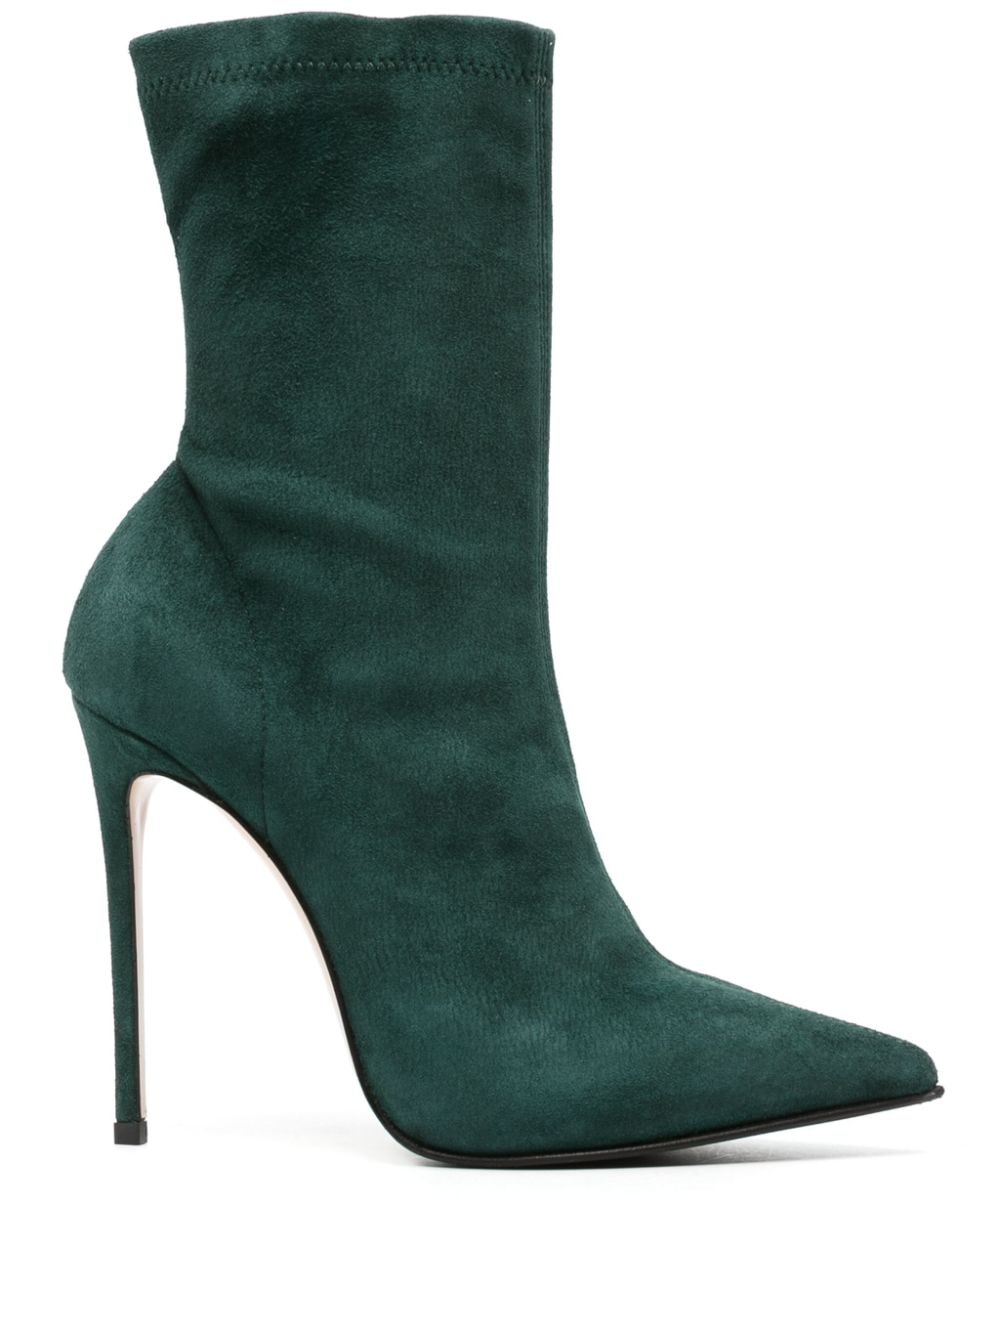 Le Silla Eva 115mm pointed-toe boots - Green von Le Silla